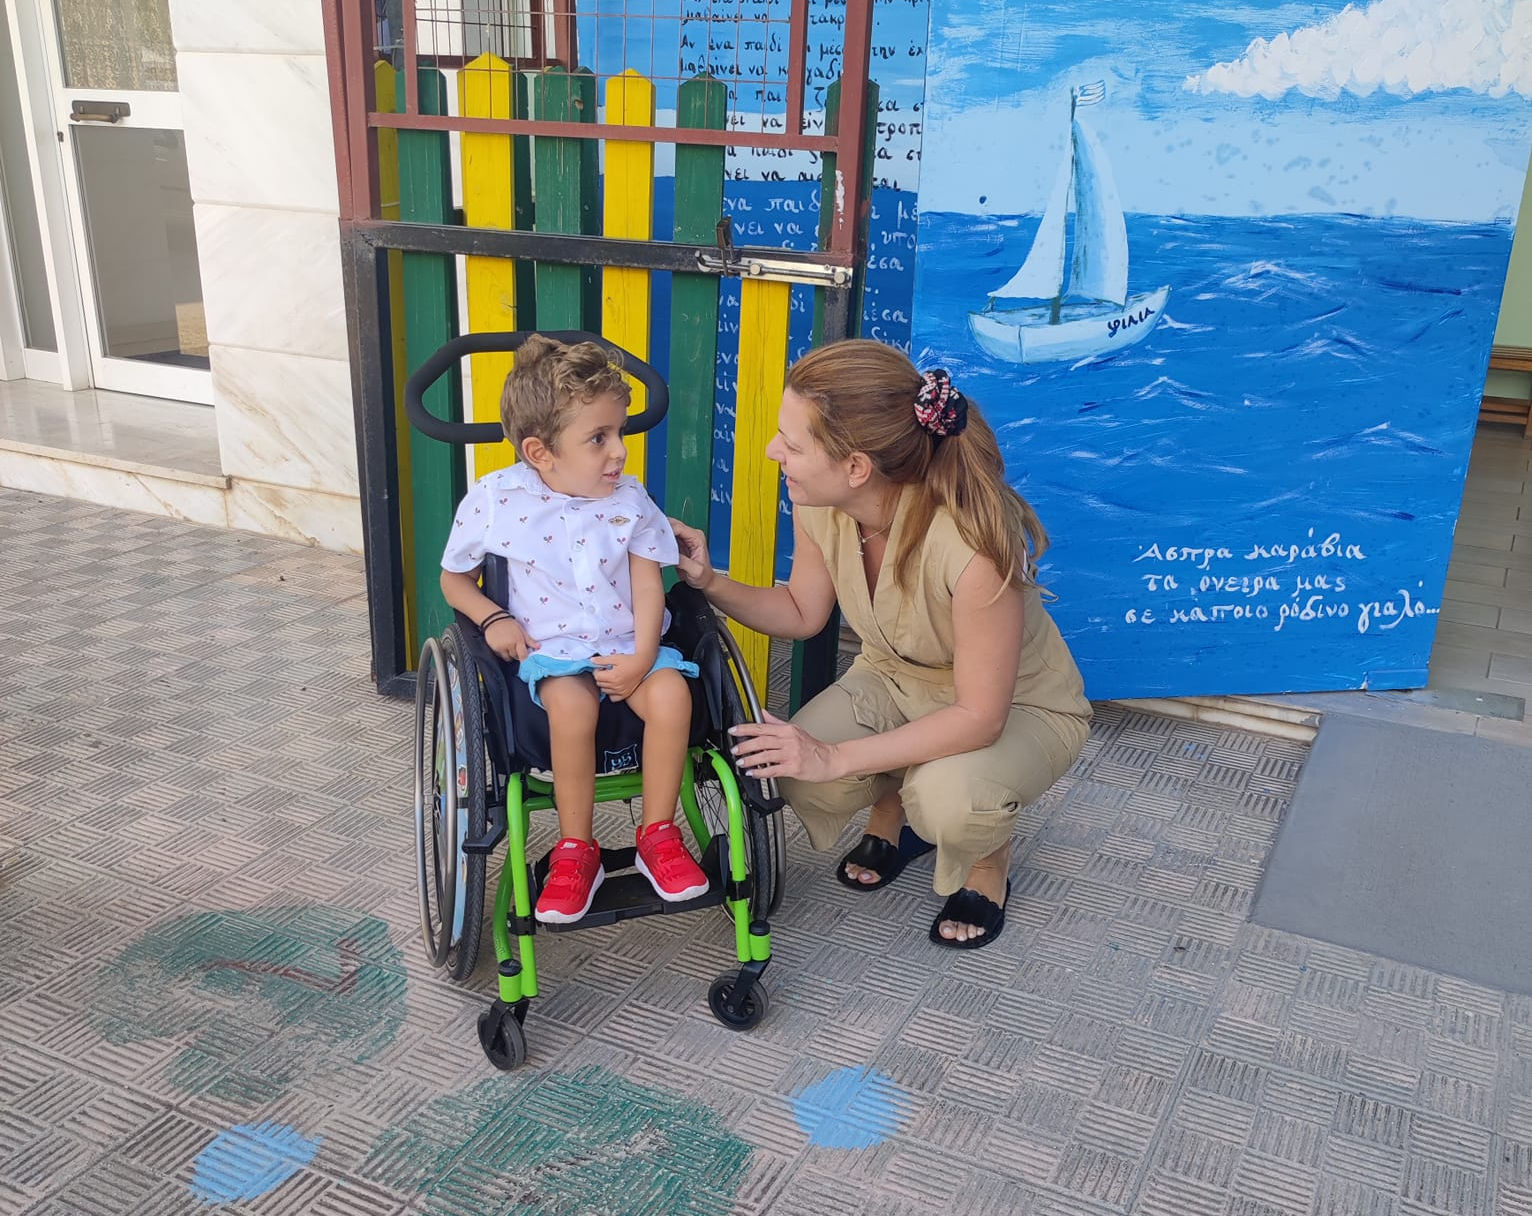 Παναγιώτης Ραφαήλ: Πρώτη ημέρα στο σχολείο για τον μικρό ήρωα από την Εύβοια